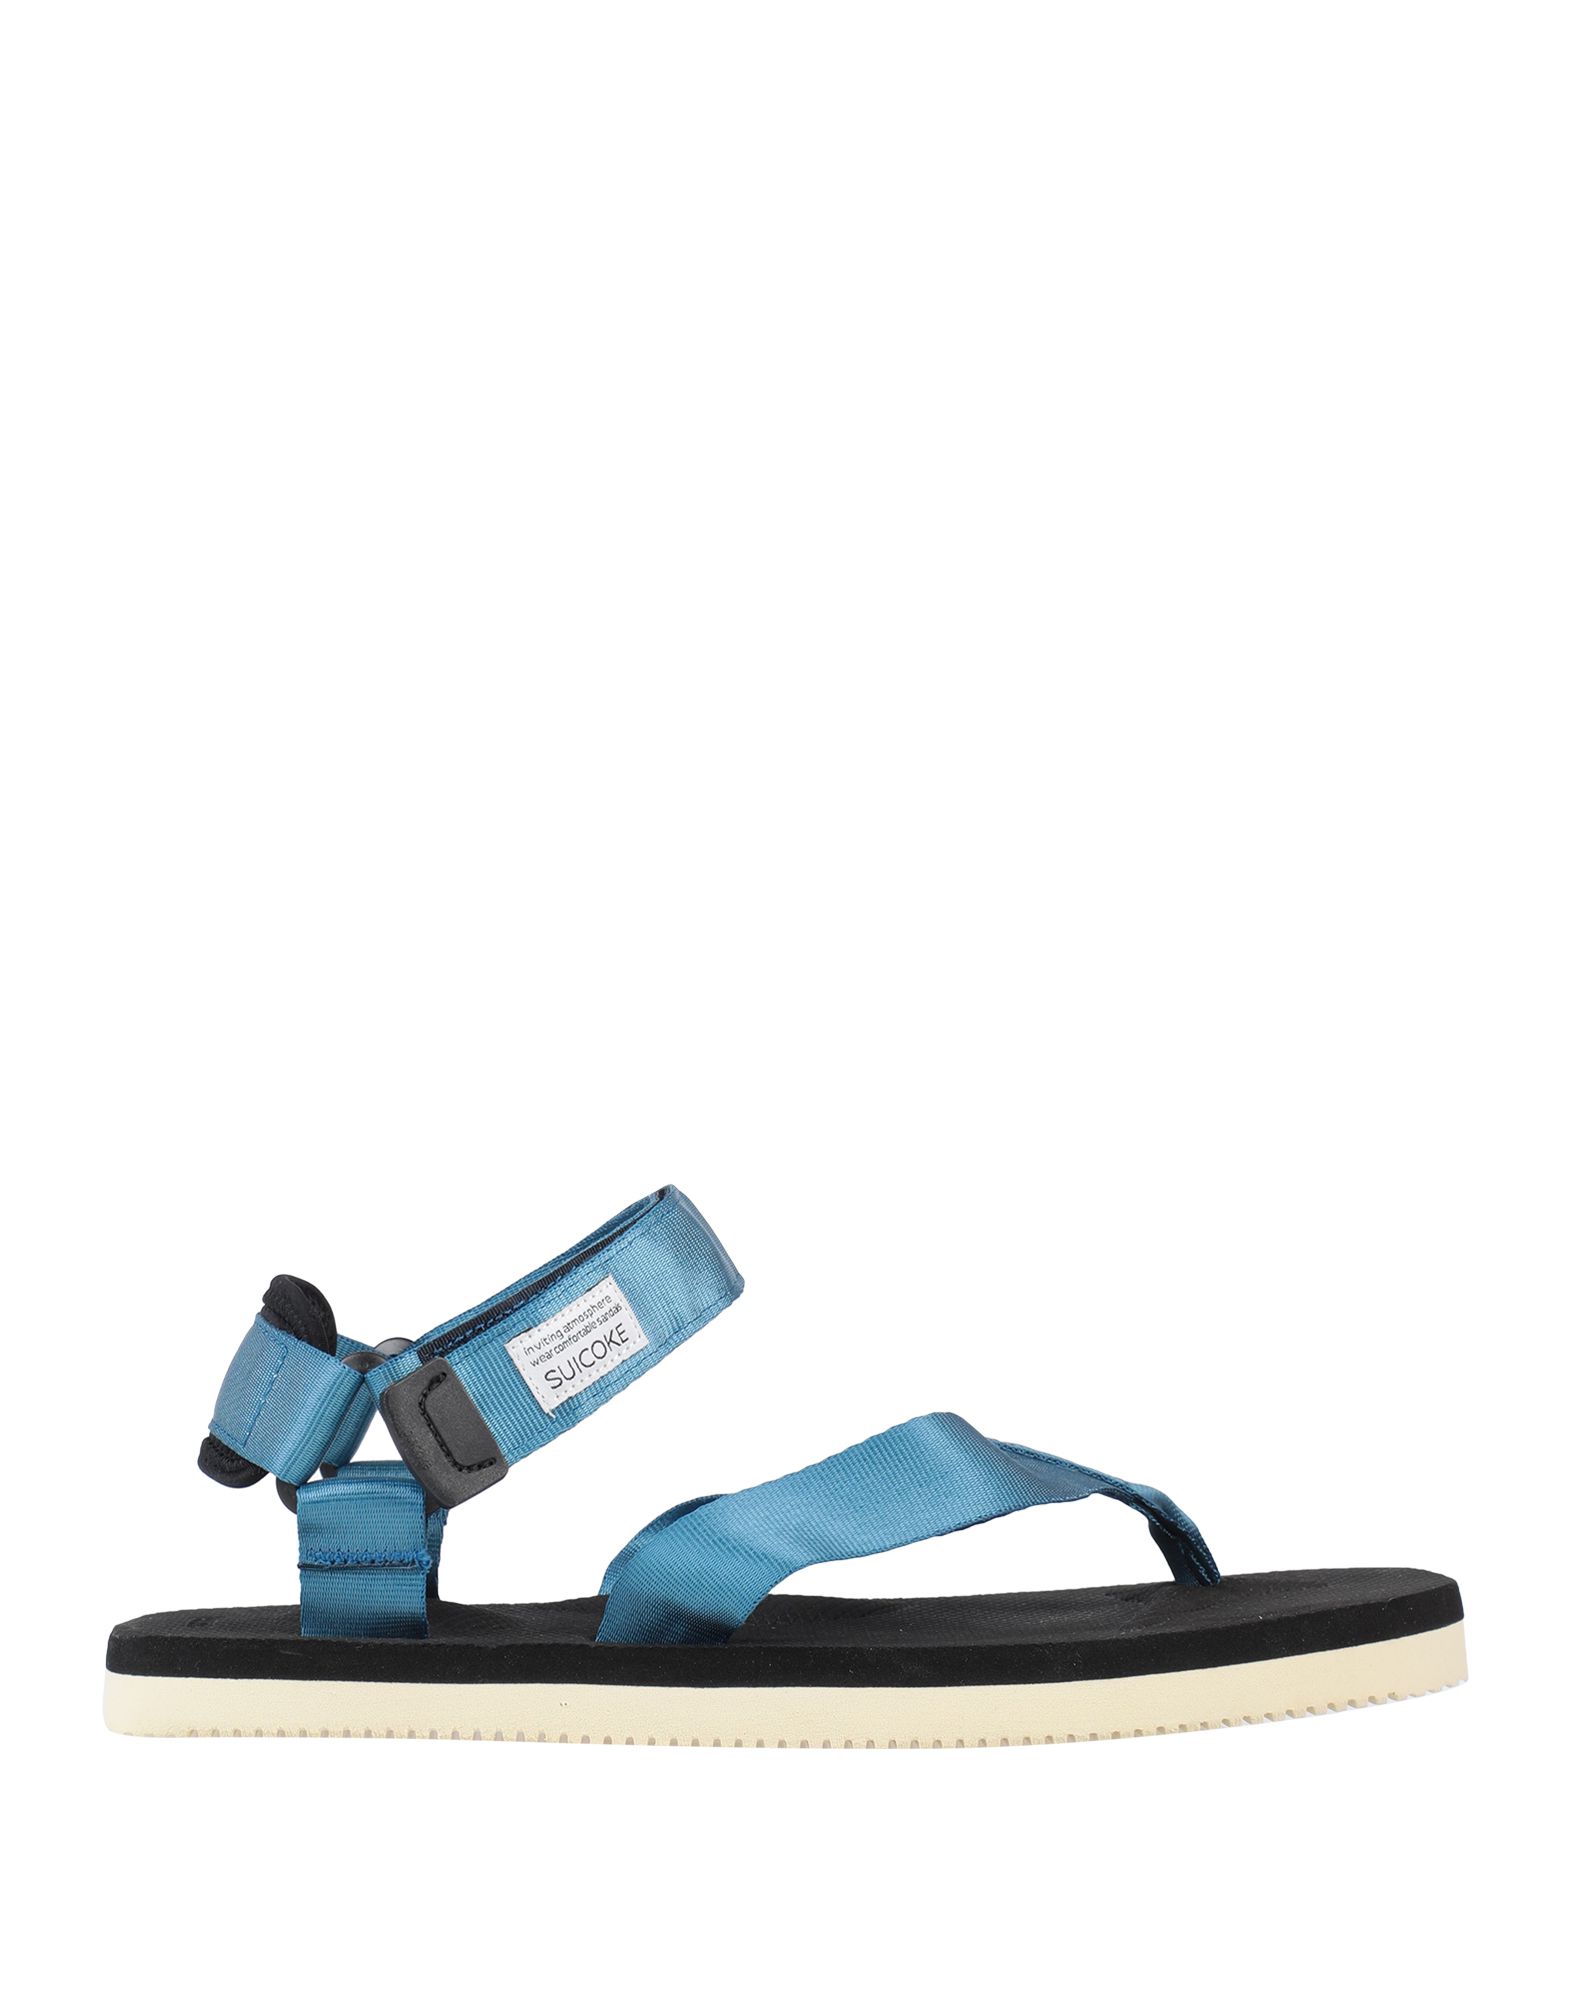 SUICOKE Toe strap sandals - Item 11940416